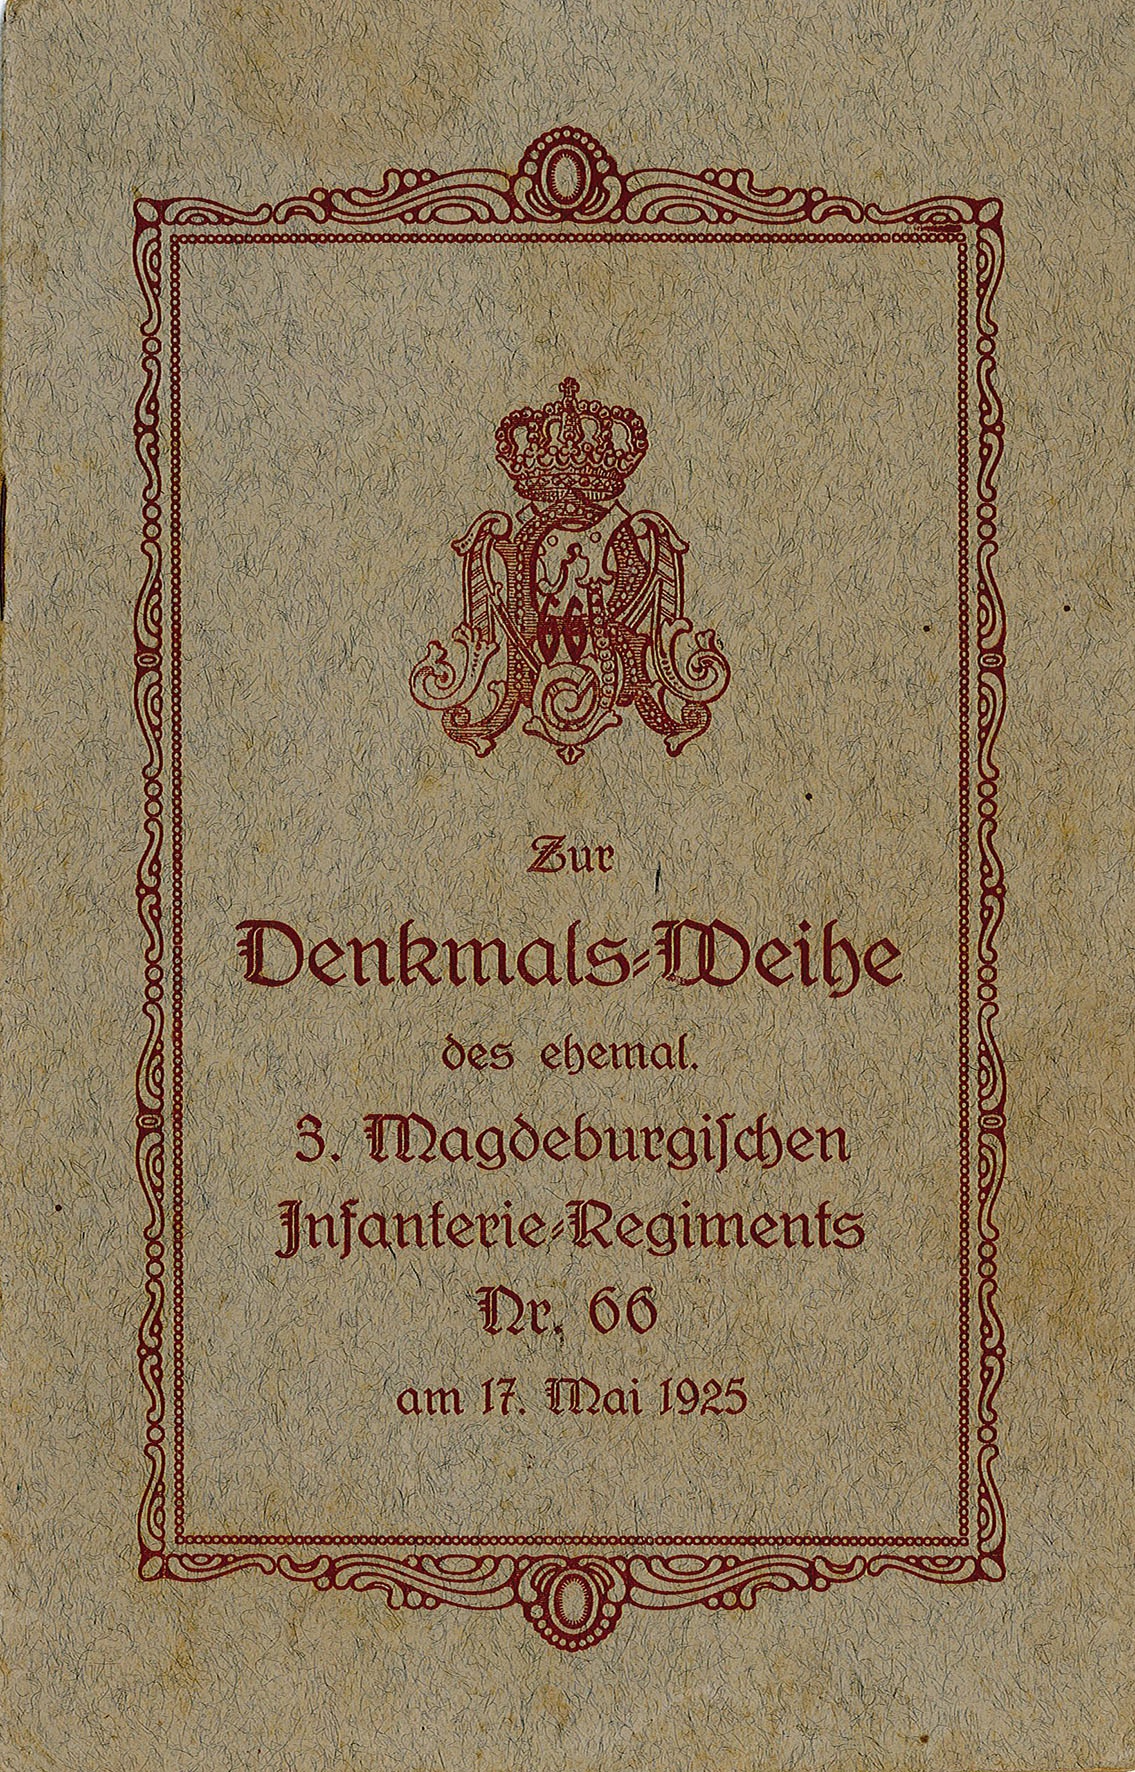 Gedenkschrift Denkmalsweihe des ehemaligen 3. Magdeburgischen Infanterie-Regiments Nr. 66 am 17. Mai 1925 (Museum Wolmirstedt RR-F)